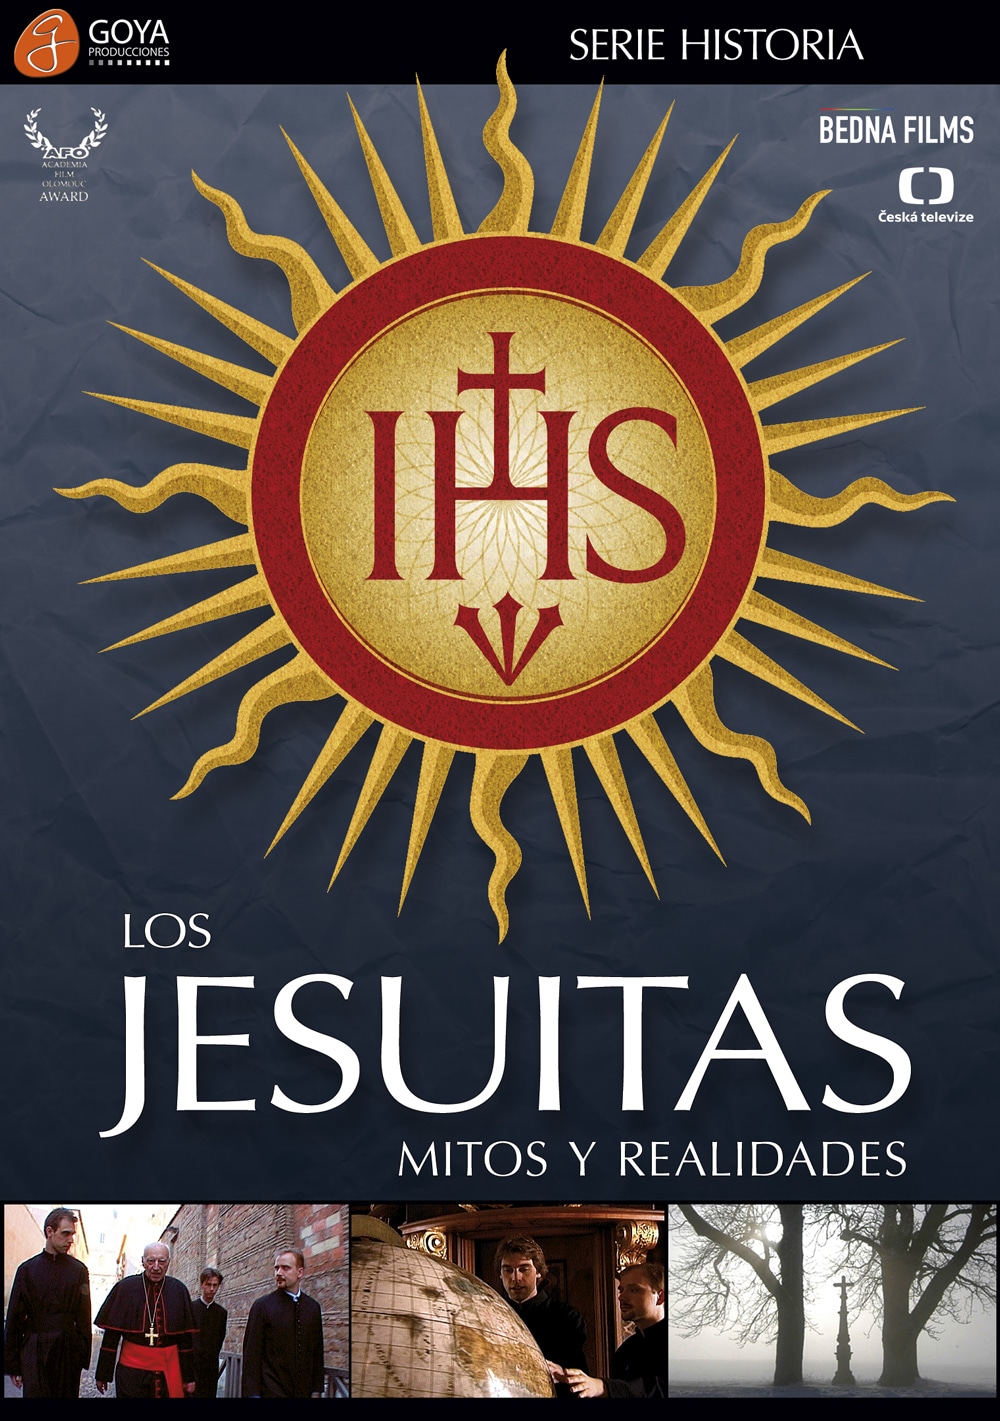 Los Jesuitas: Mitos y realidades